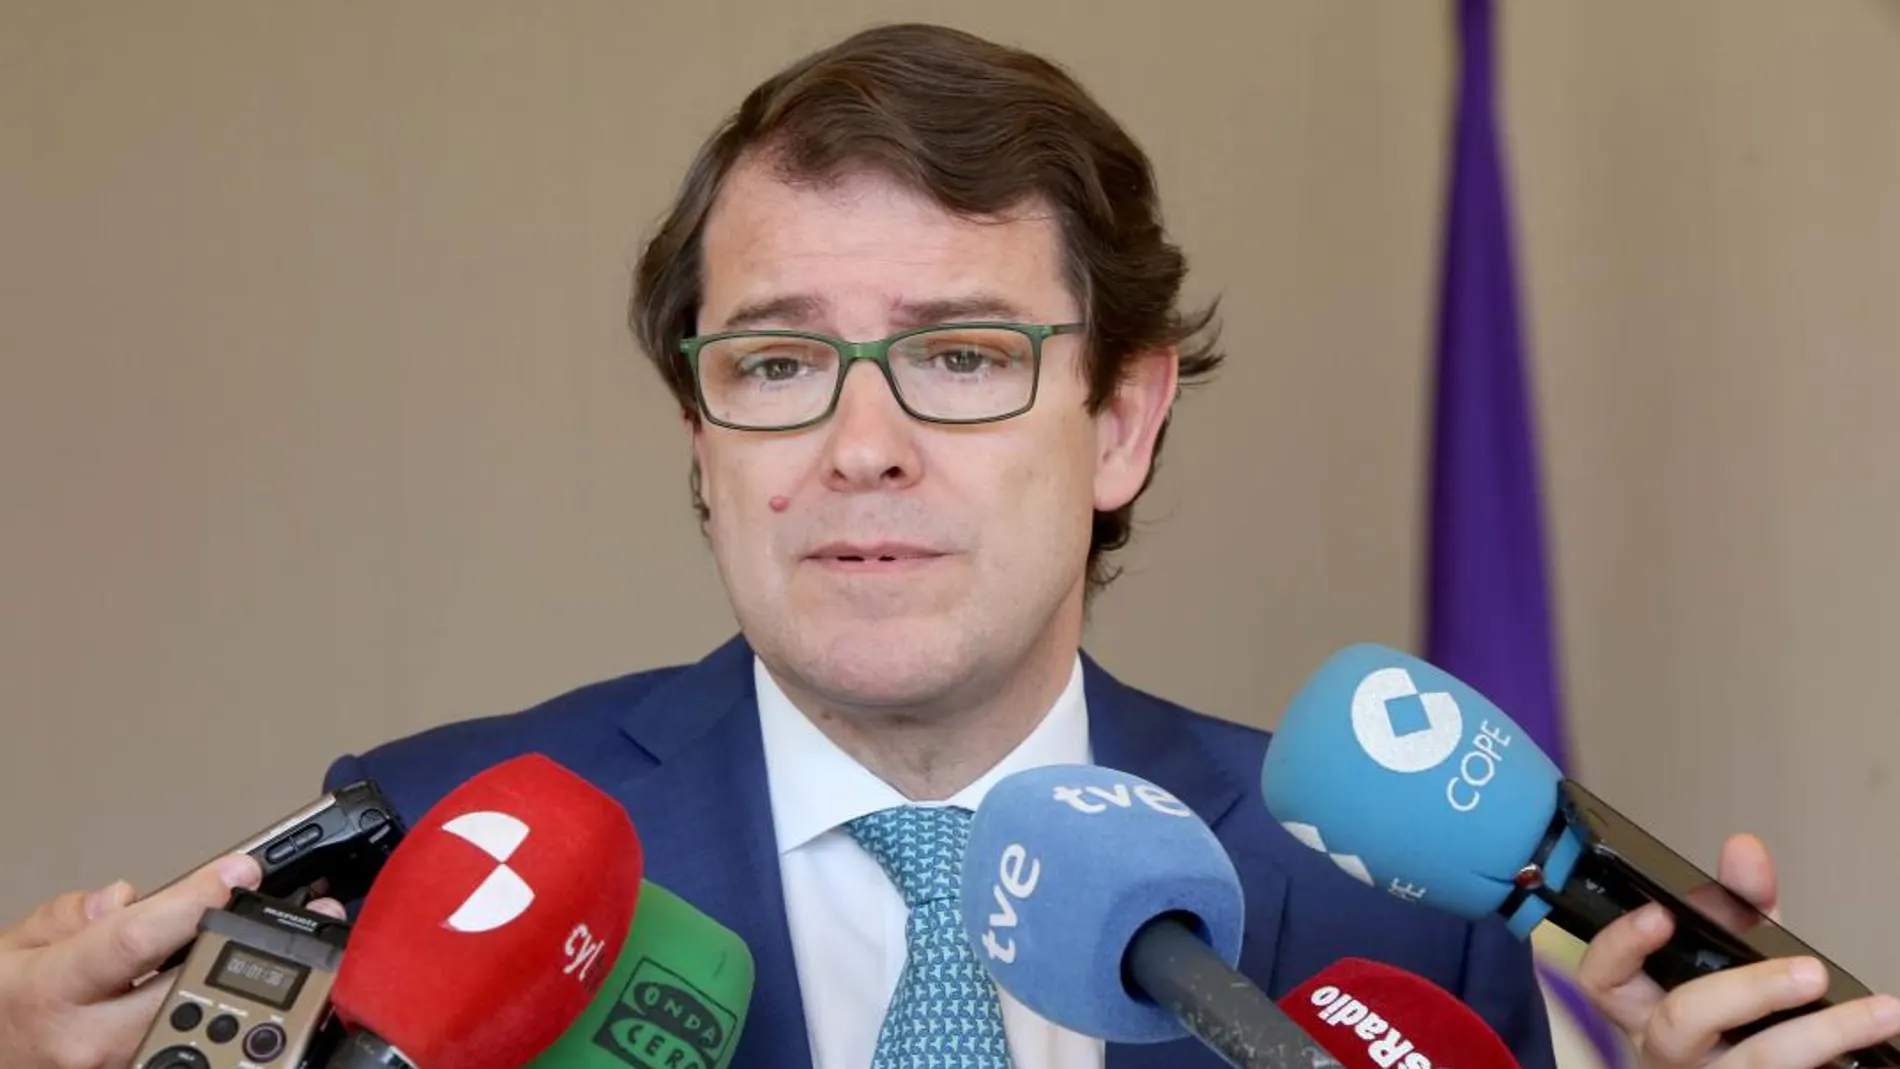 El presidente del PP de Castilla y León, Alfonso Fernández Mañueco, atiende a los medios